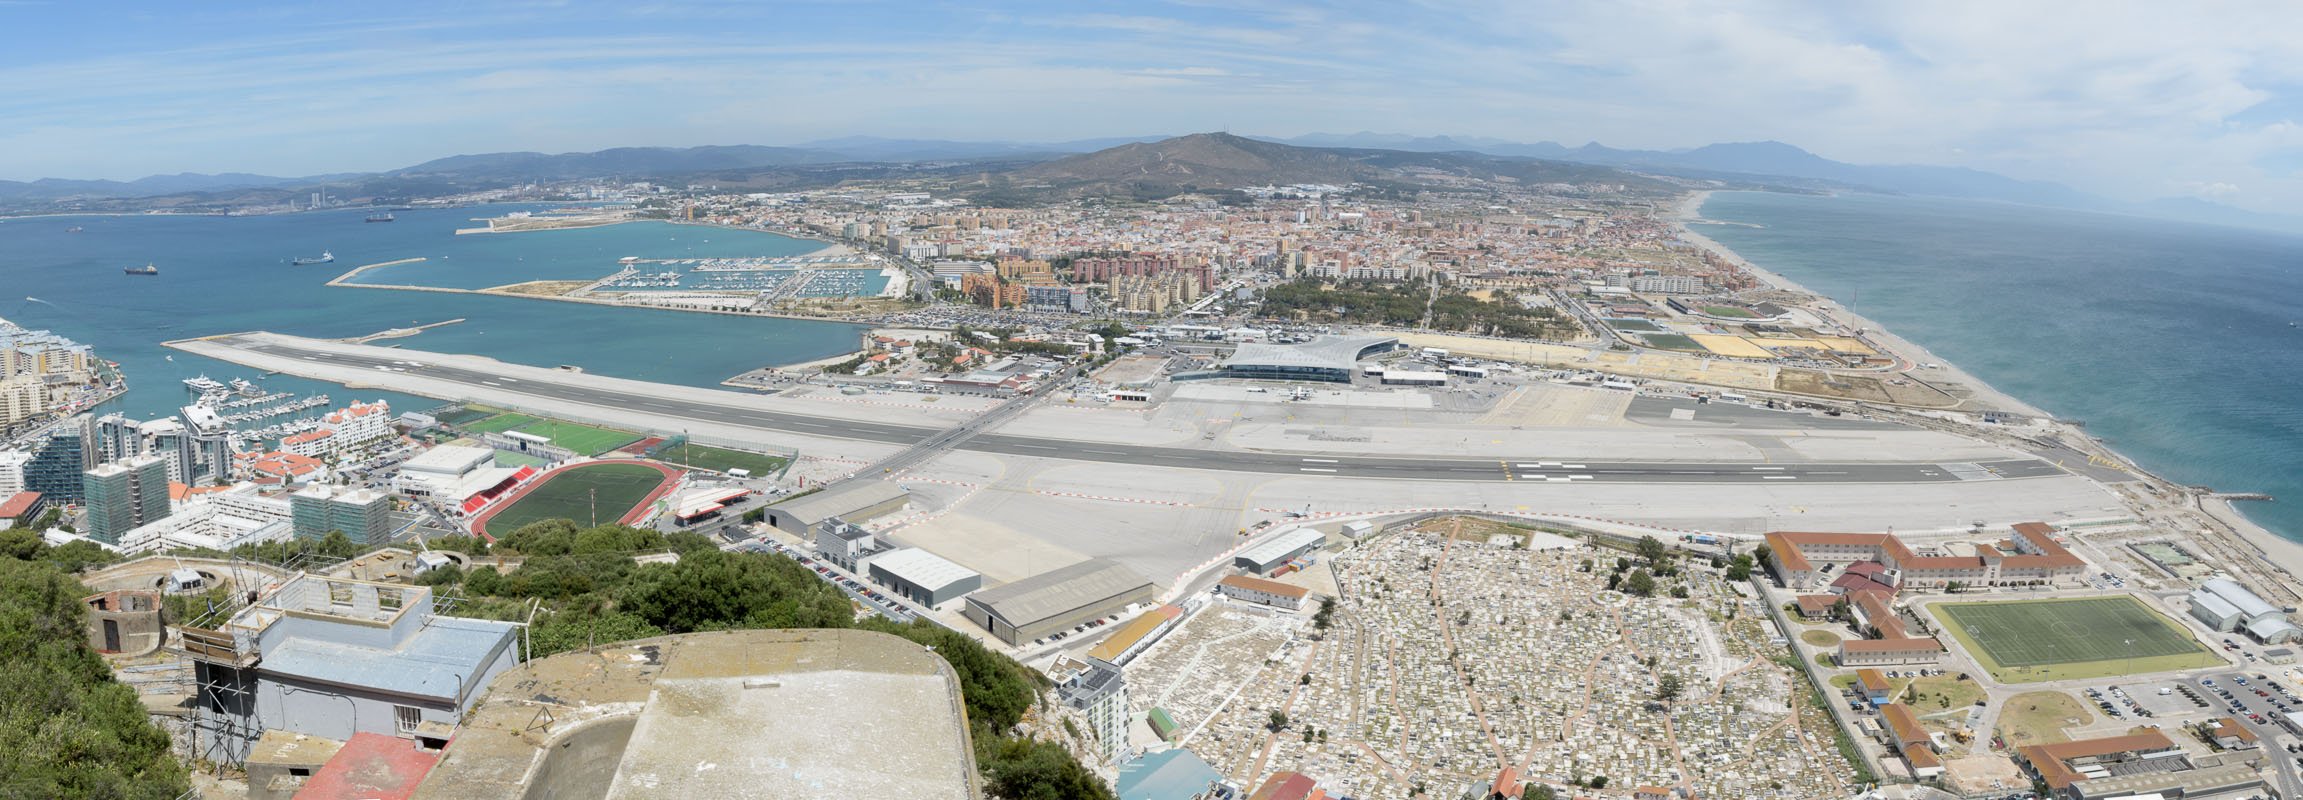 Panoroma van het vliegveld van Gibraltar.